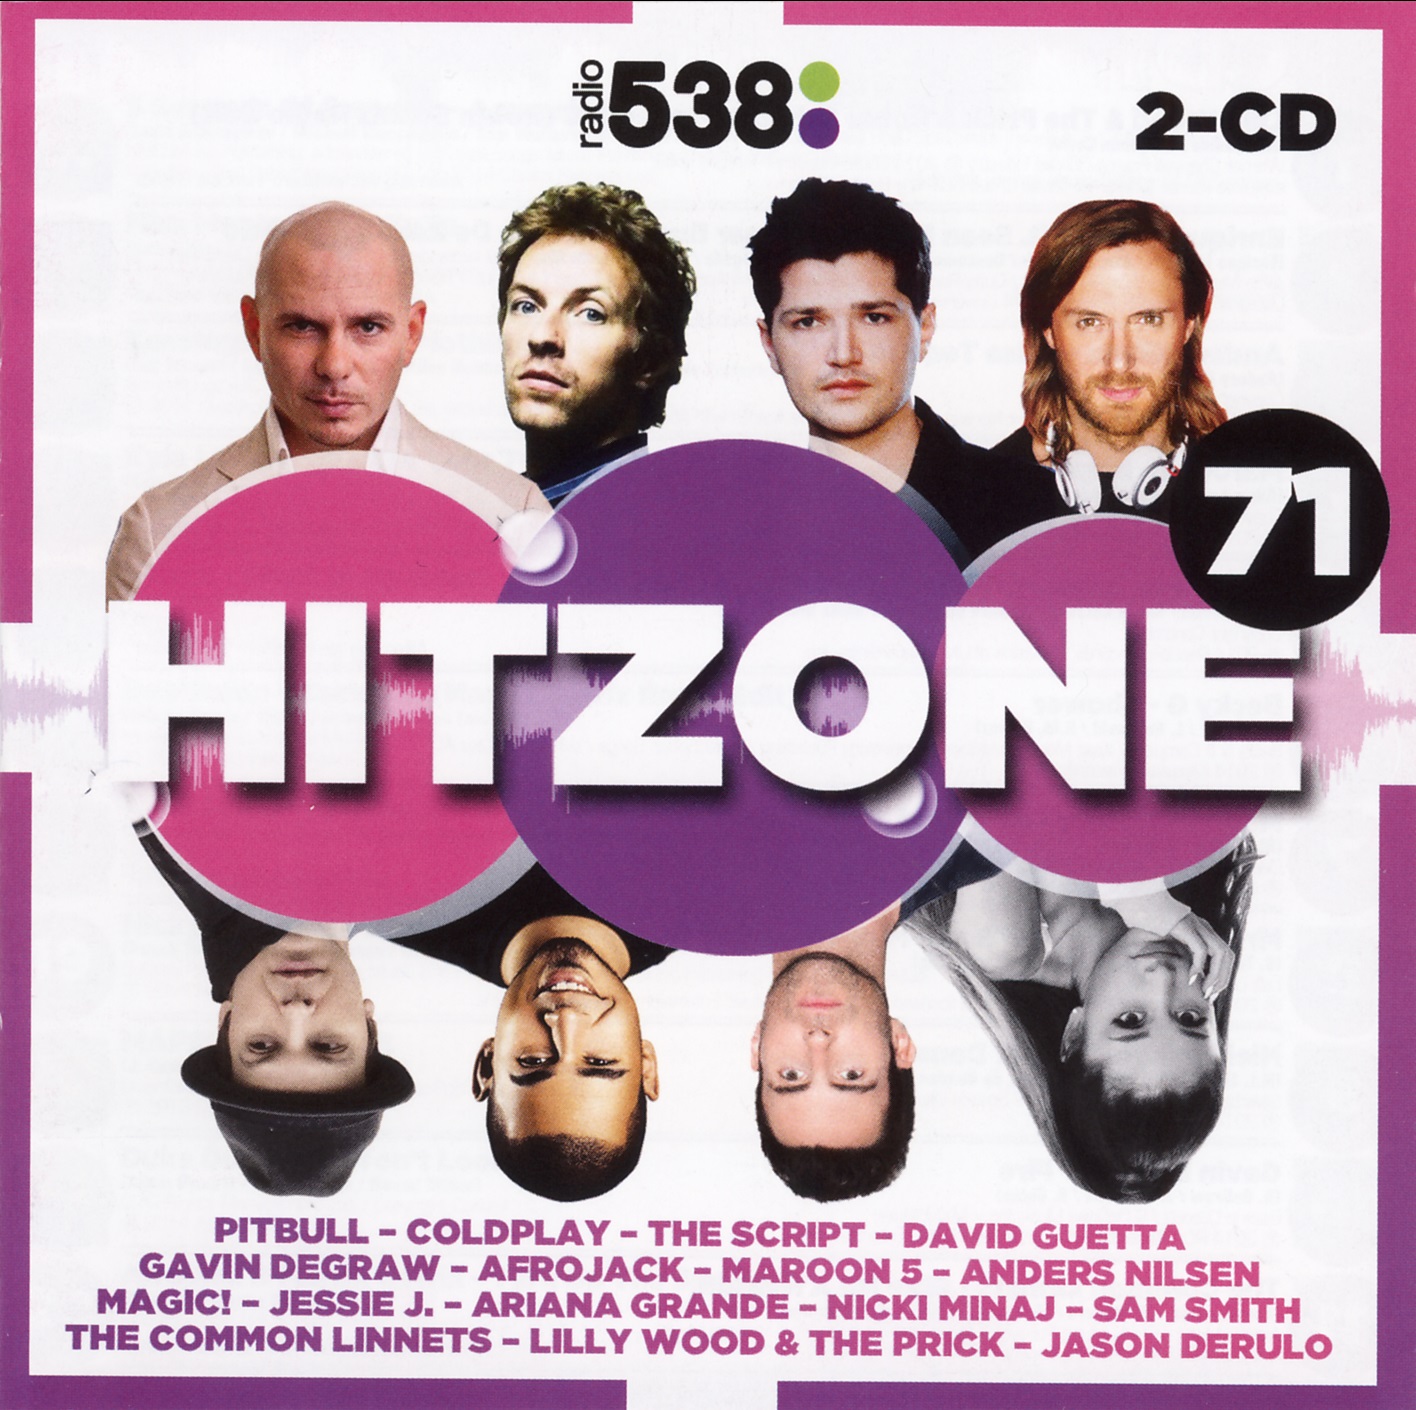 Haan Ontdekking volwassen Release “Radio 538: Hitzone 71” by Various Artists - MusicBrainz